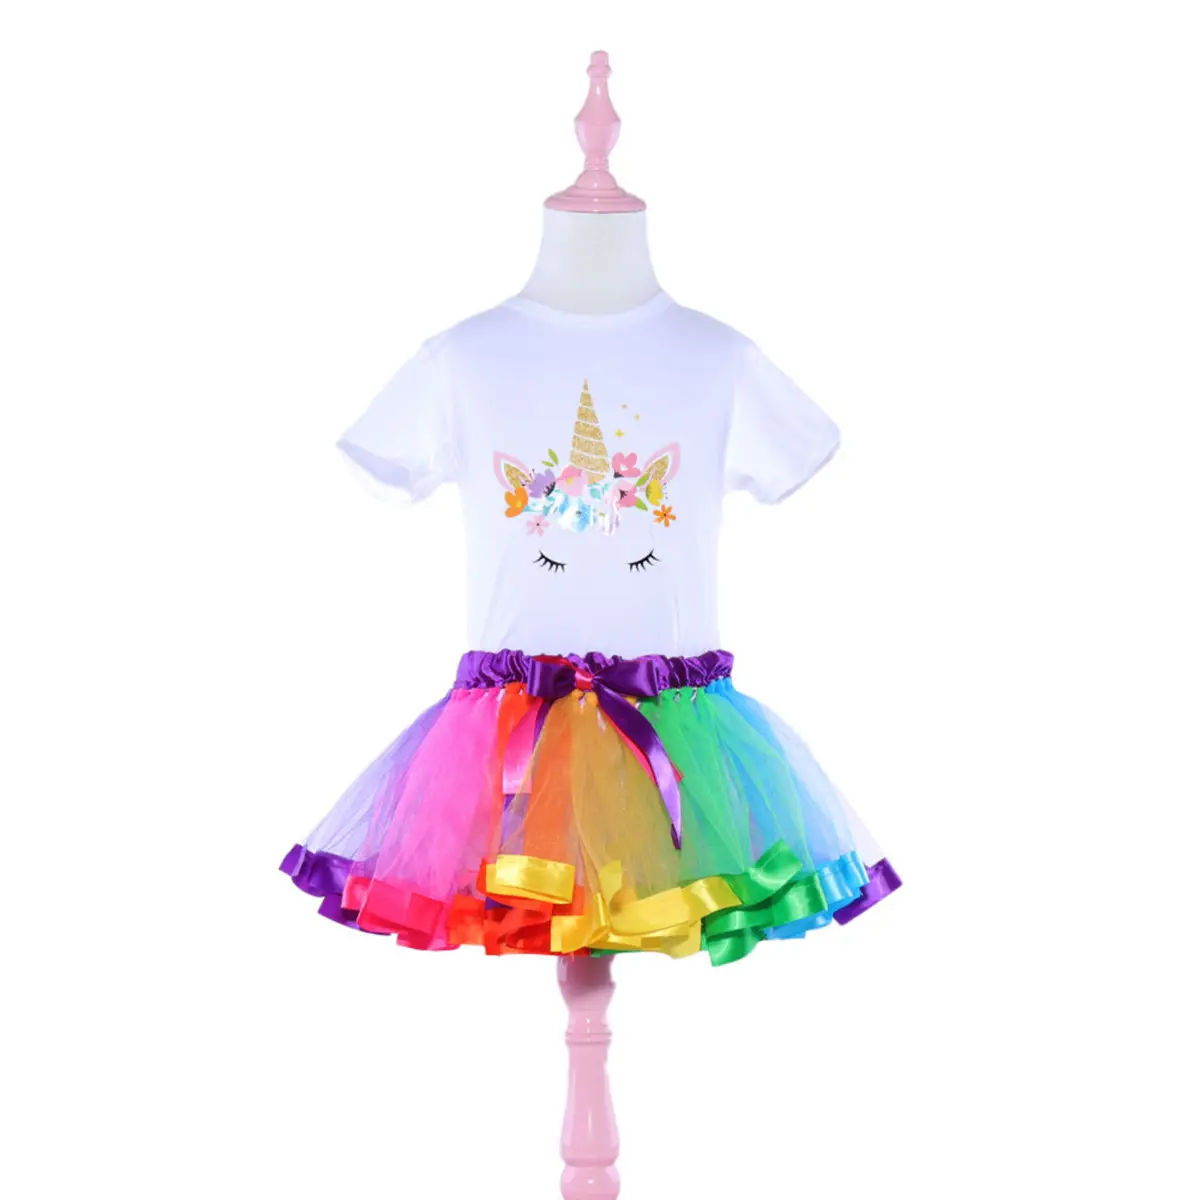 OEM personalización de los niños ropa de bebé de verano de niña vestido falda traje disfraces princesa fiesta de vestido TUTU vestido falda